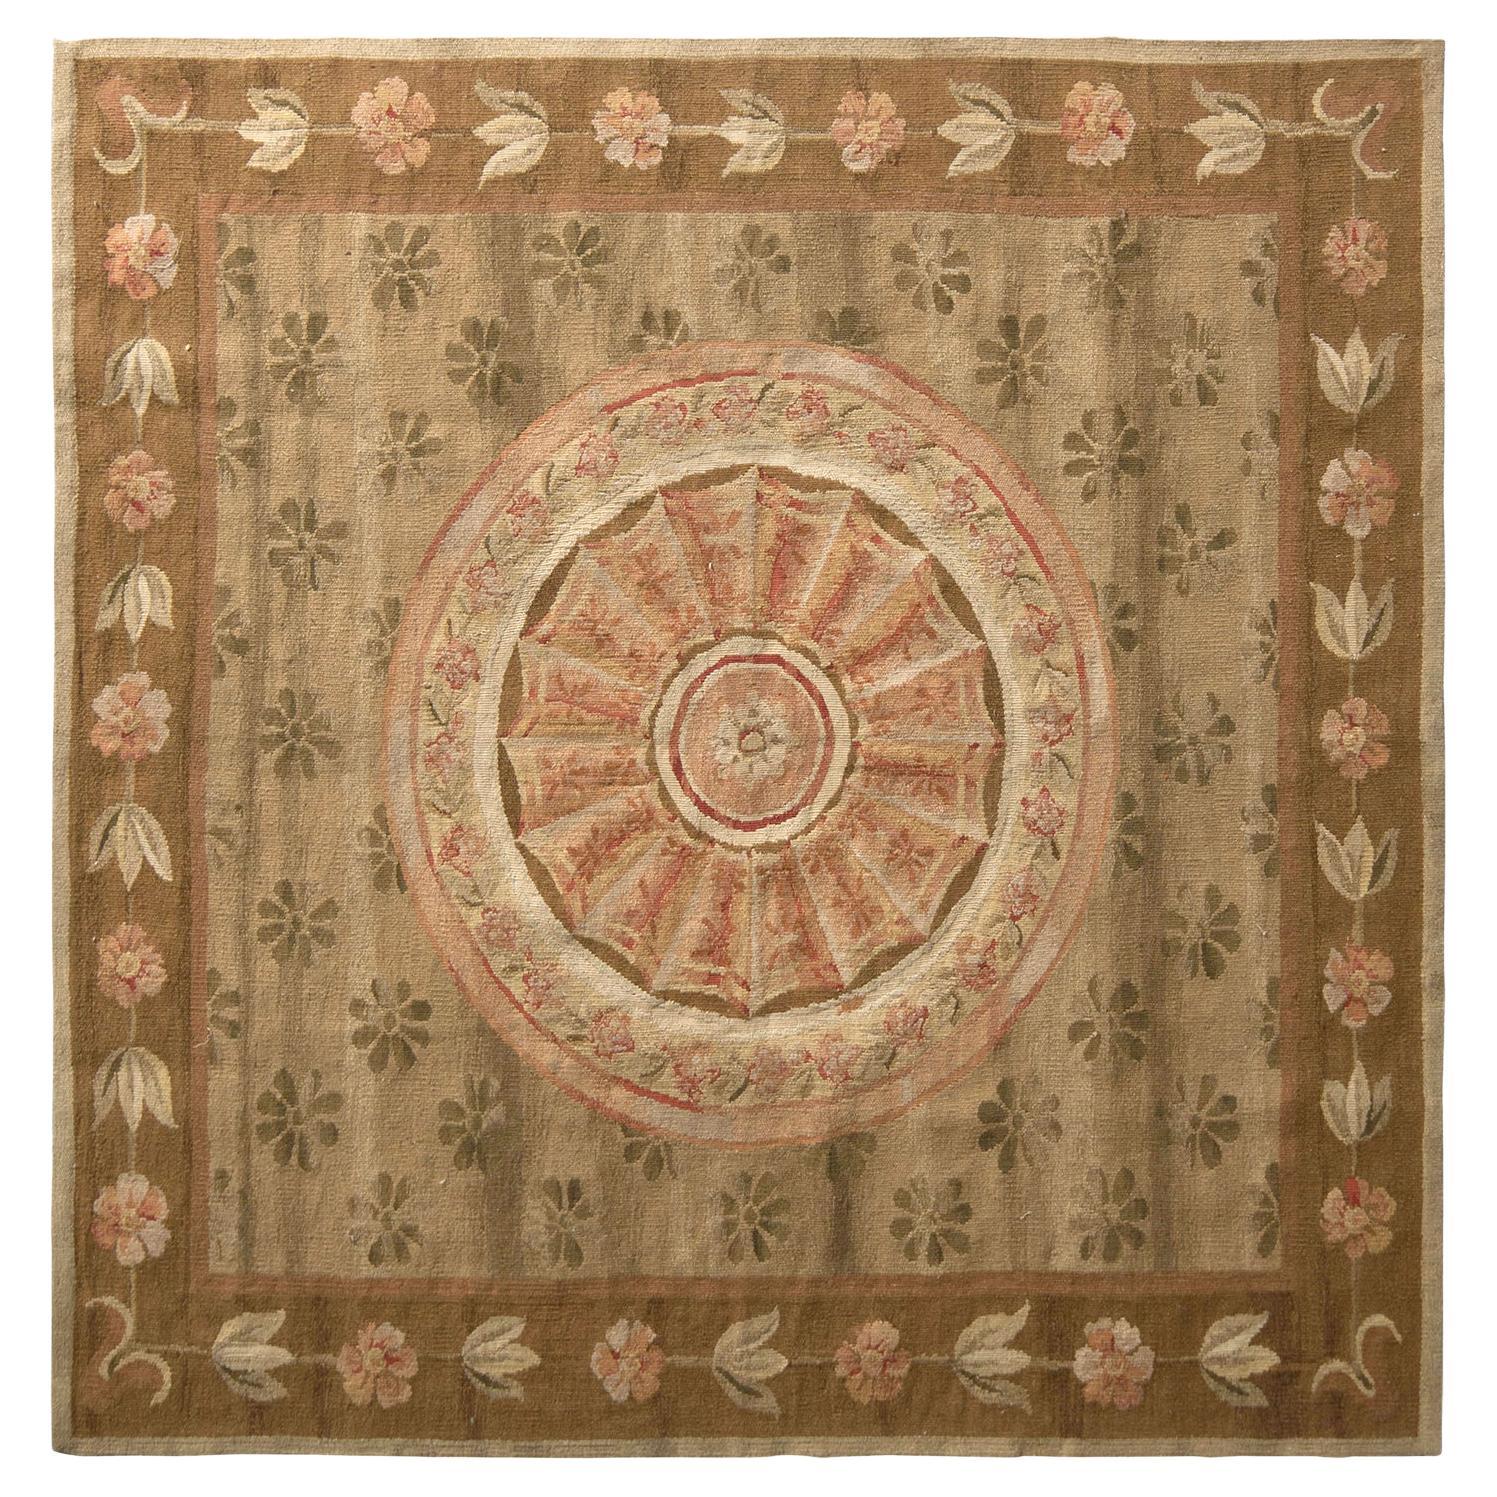 Teppich & Kelim-Teppich im Aubusson-Stil in Beige, Braun und Rosa mit Blumenmuster